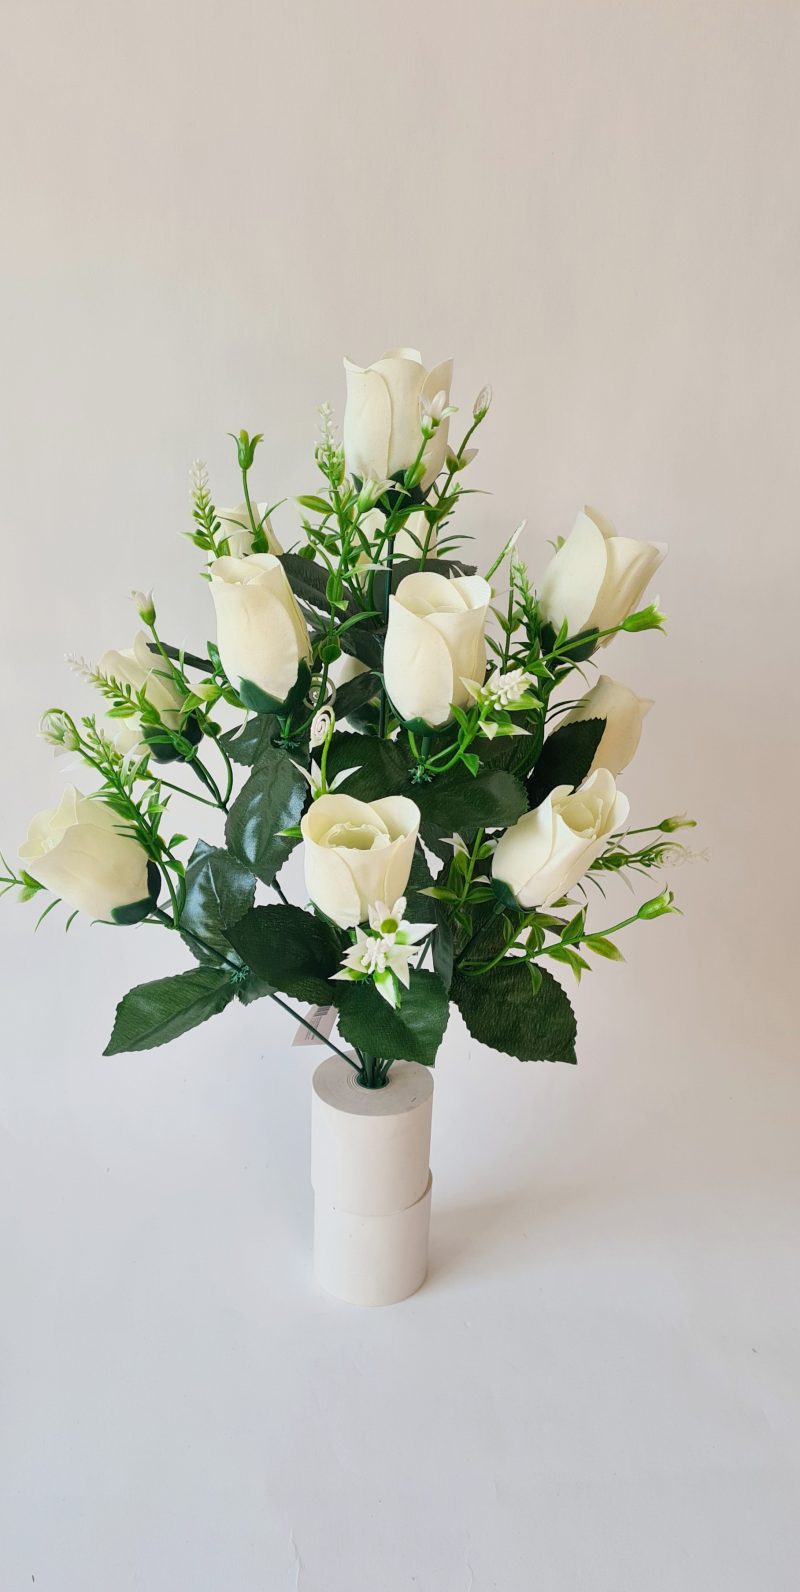 Rožių puokštė 12 žiedų balta sp.